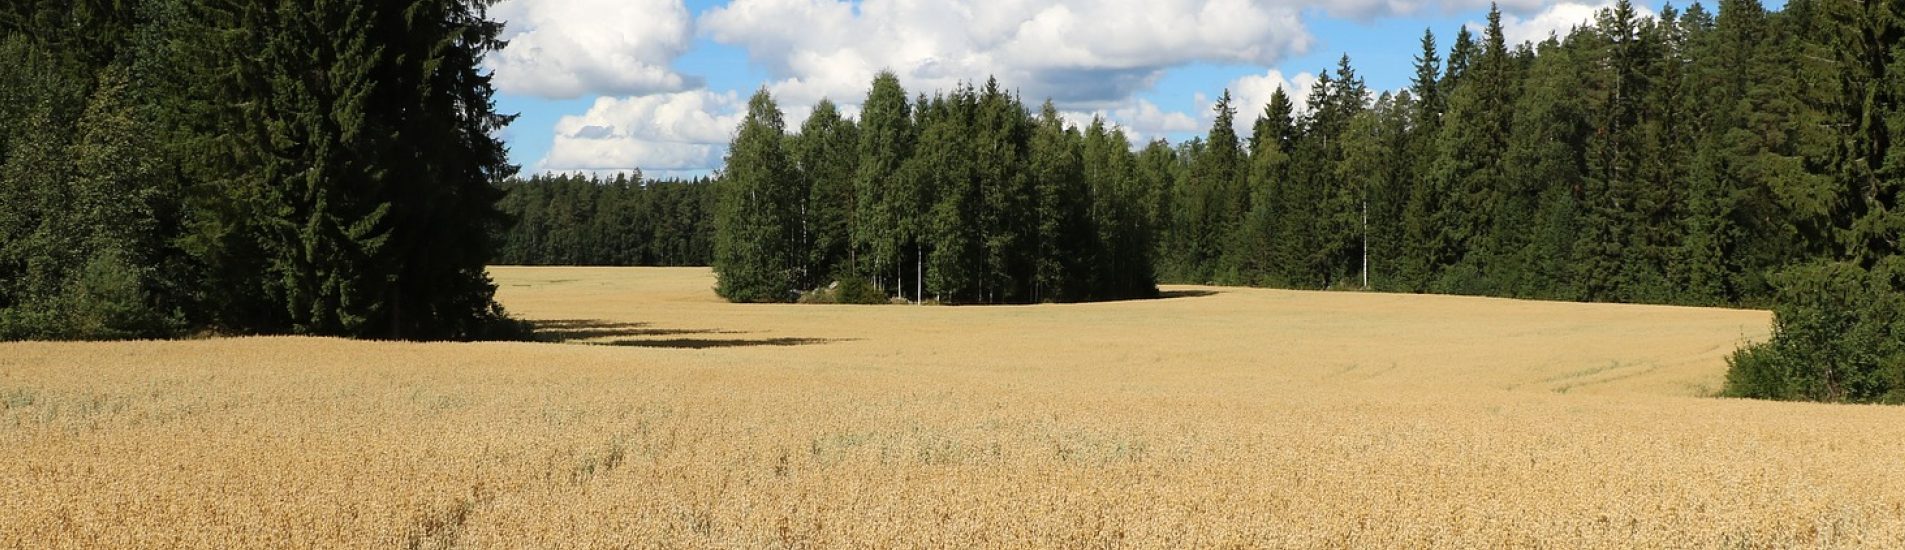 Palvelut viljelijöille - humuspehtoori.fi kuvituskuva peltomaisema